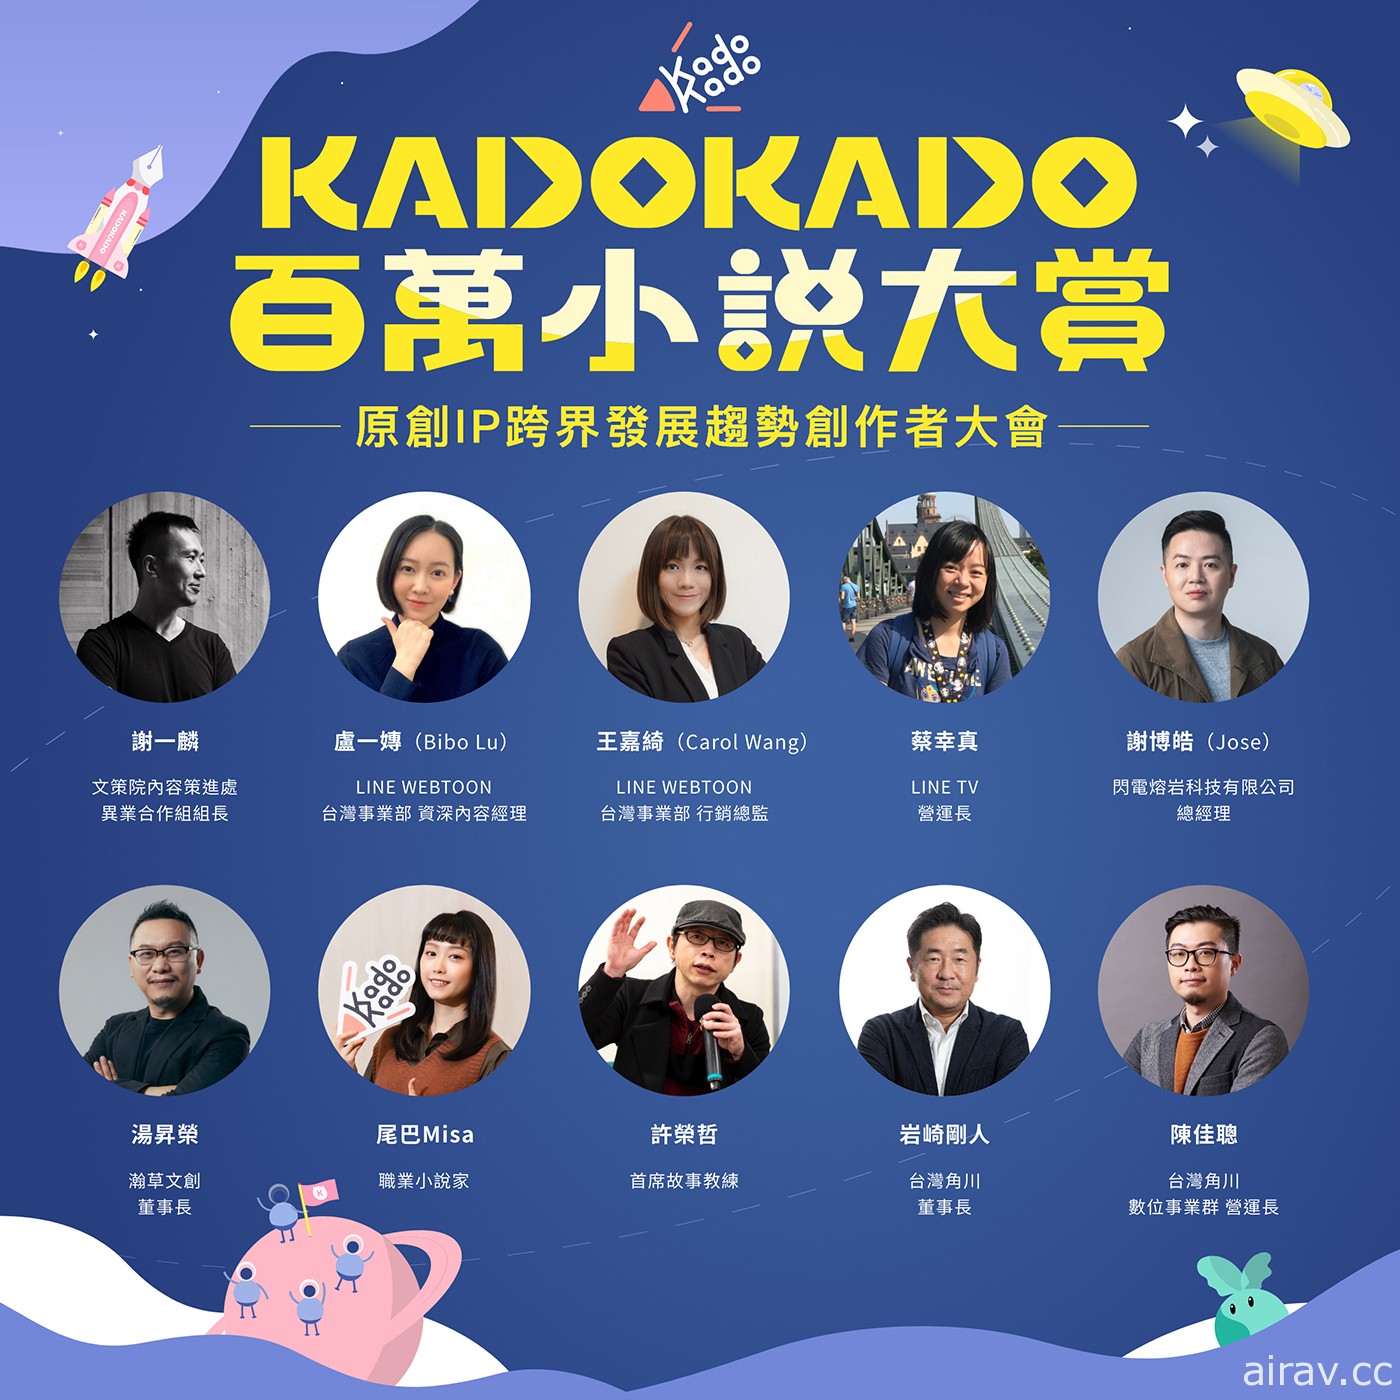 KadoKado 百万小说创作大赏 6 月起活动正式展开